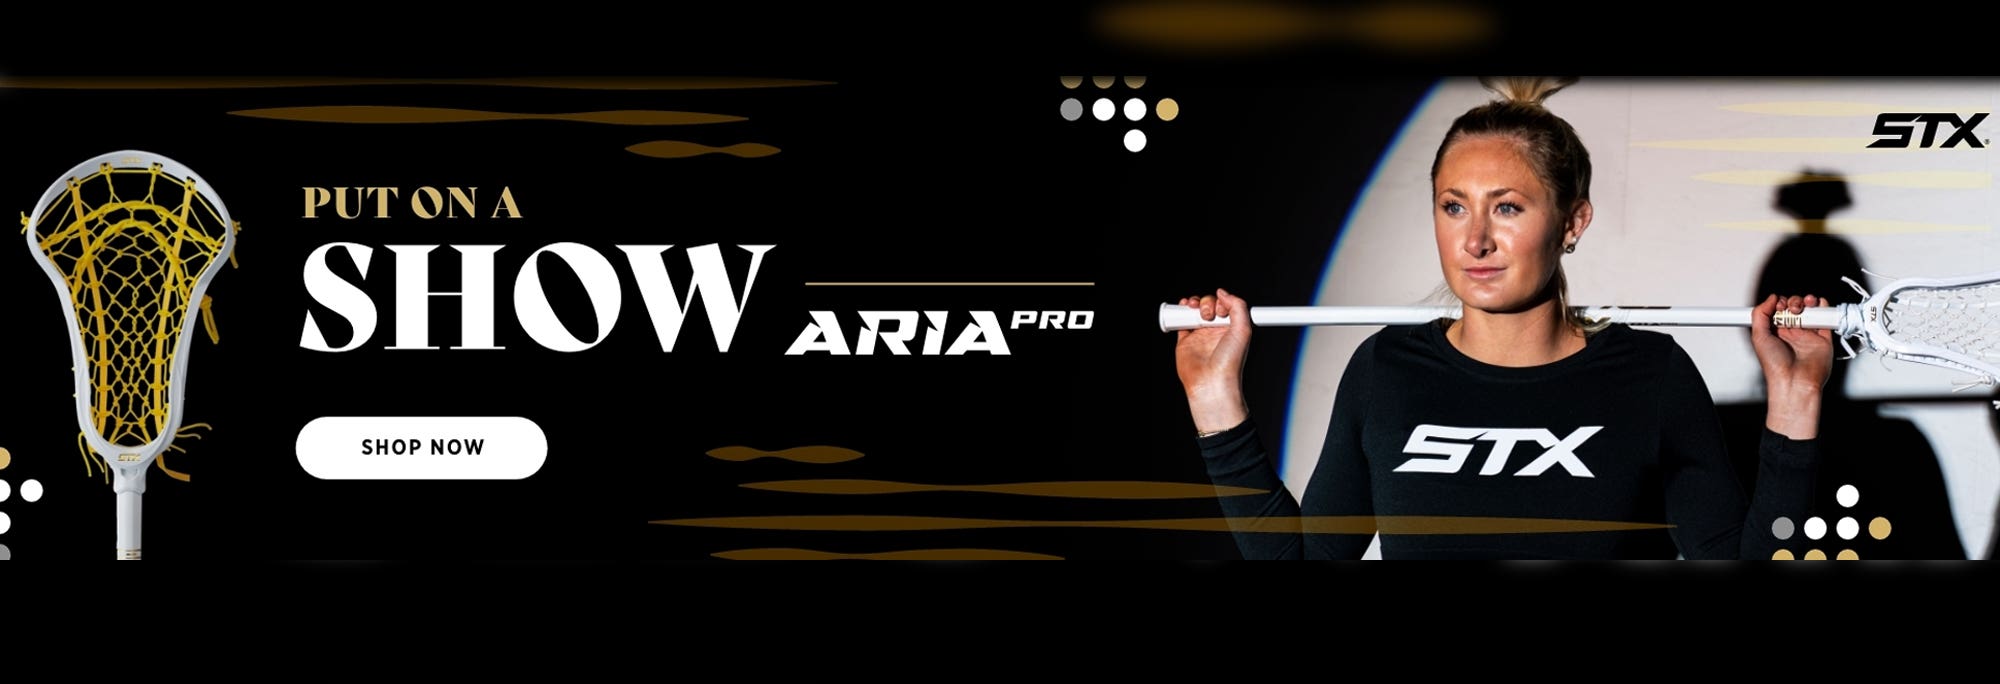 Aria Pro Complete Women's Lacrosse Stick